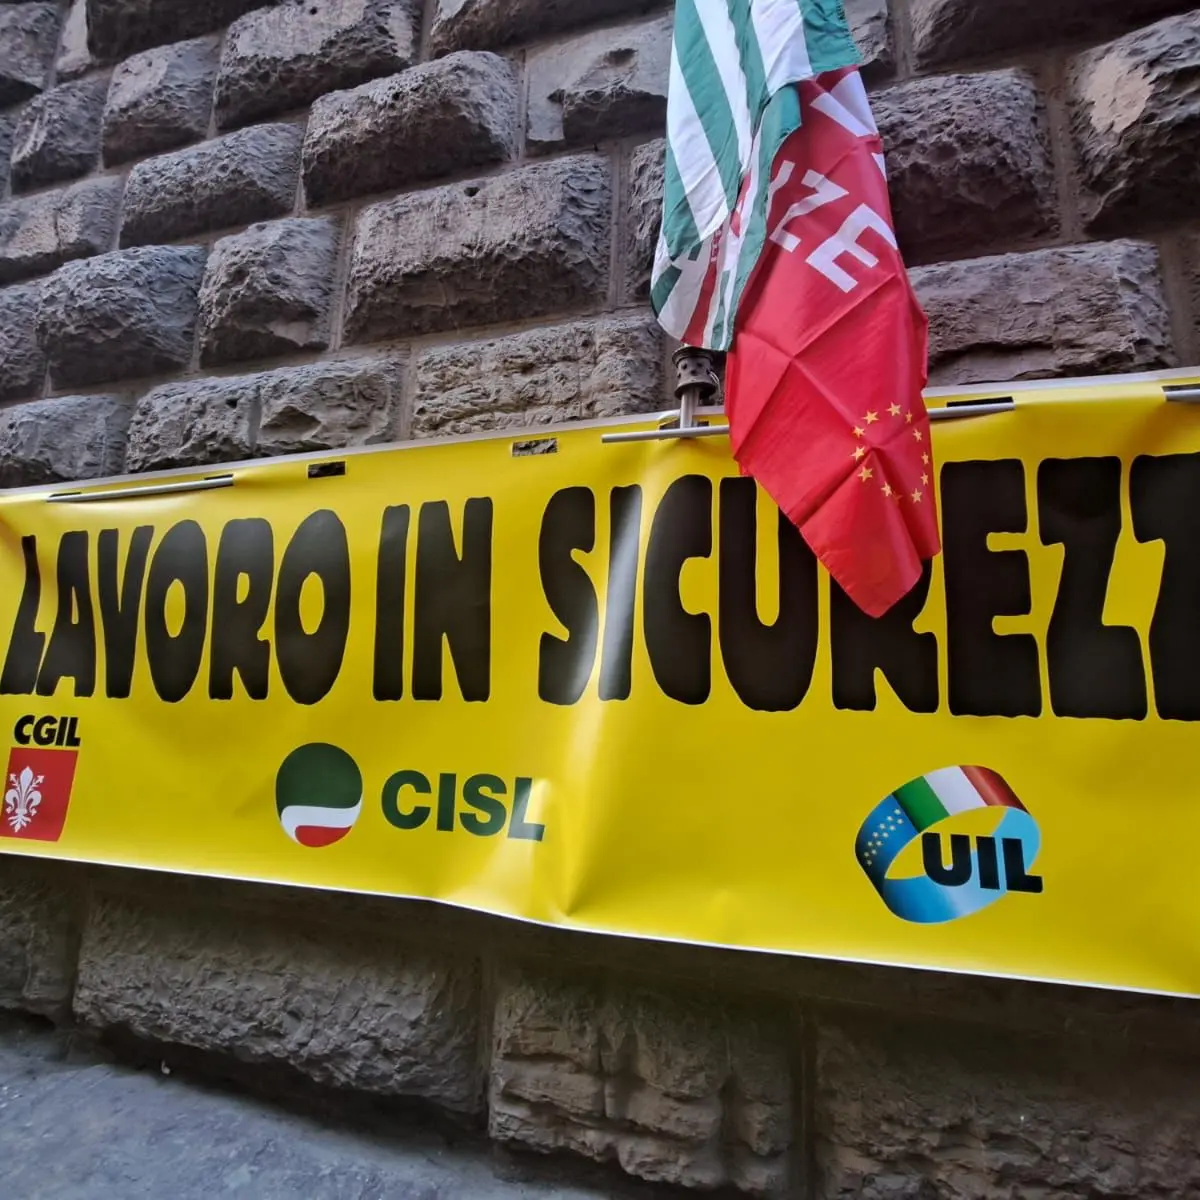 Marasco, Cgil Firenze: “Il profitto non governi il lavoro”